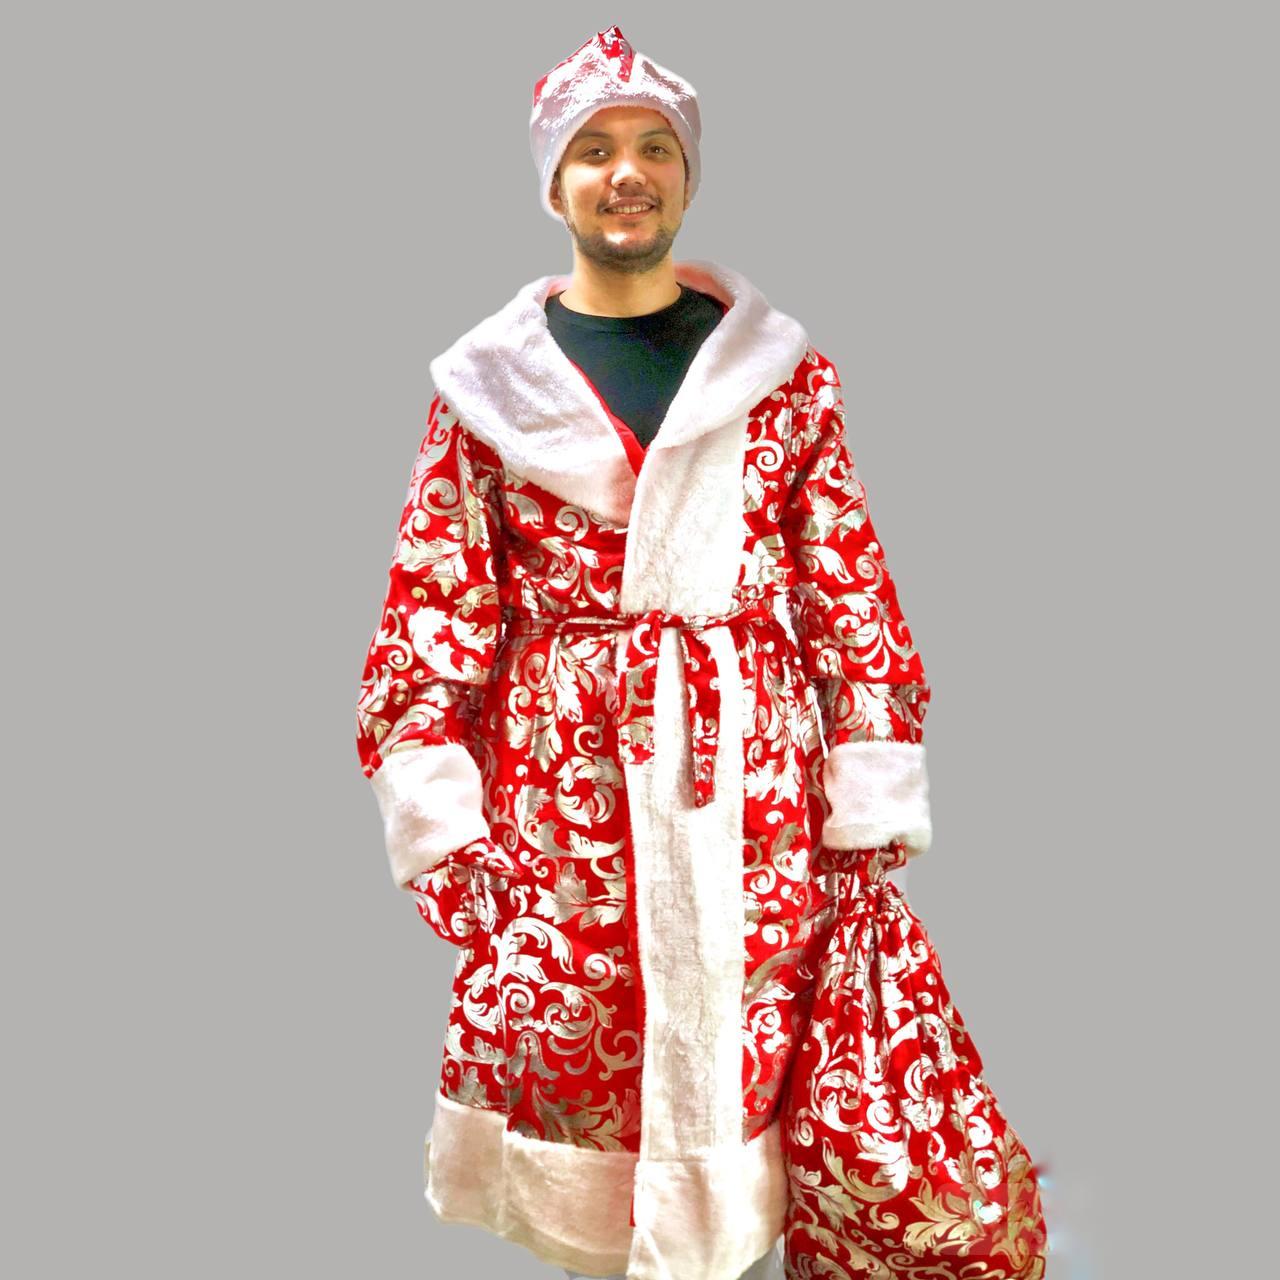 Костюм карнавальный взрослый Деда Мороза Аяз Ата красный с белой окантовкой узорная, фото 1